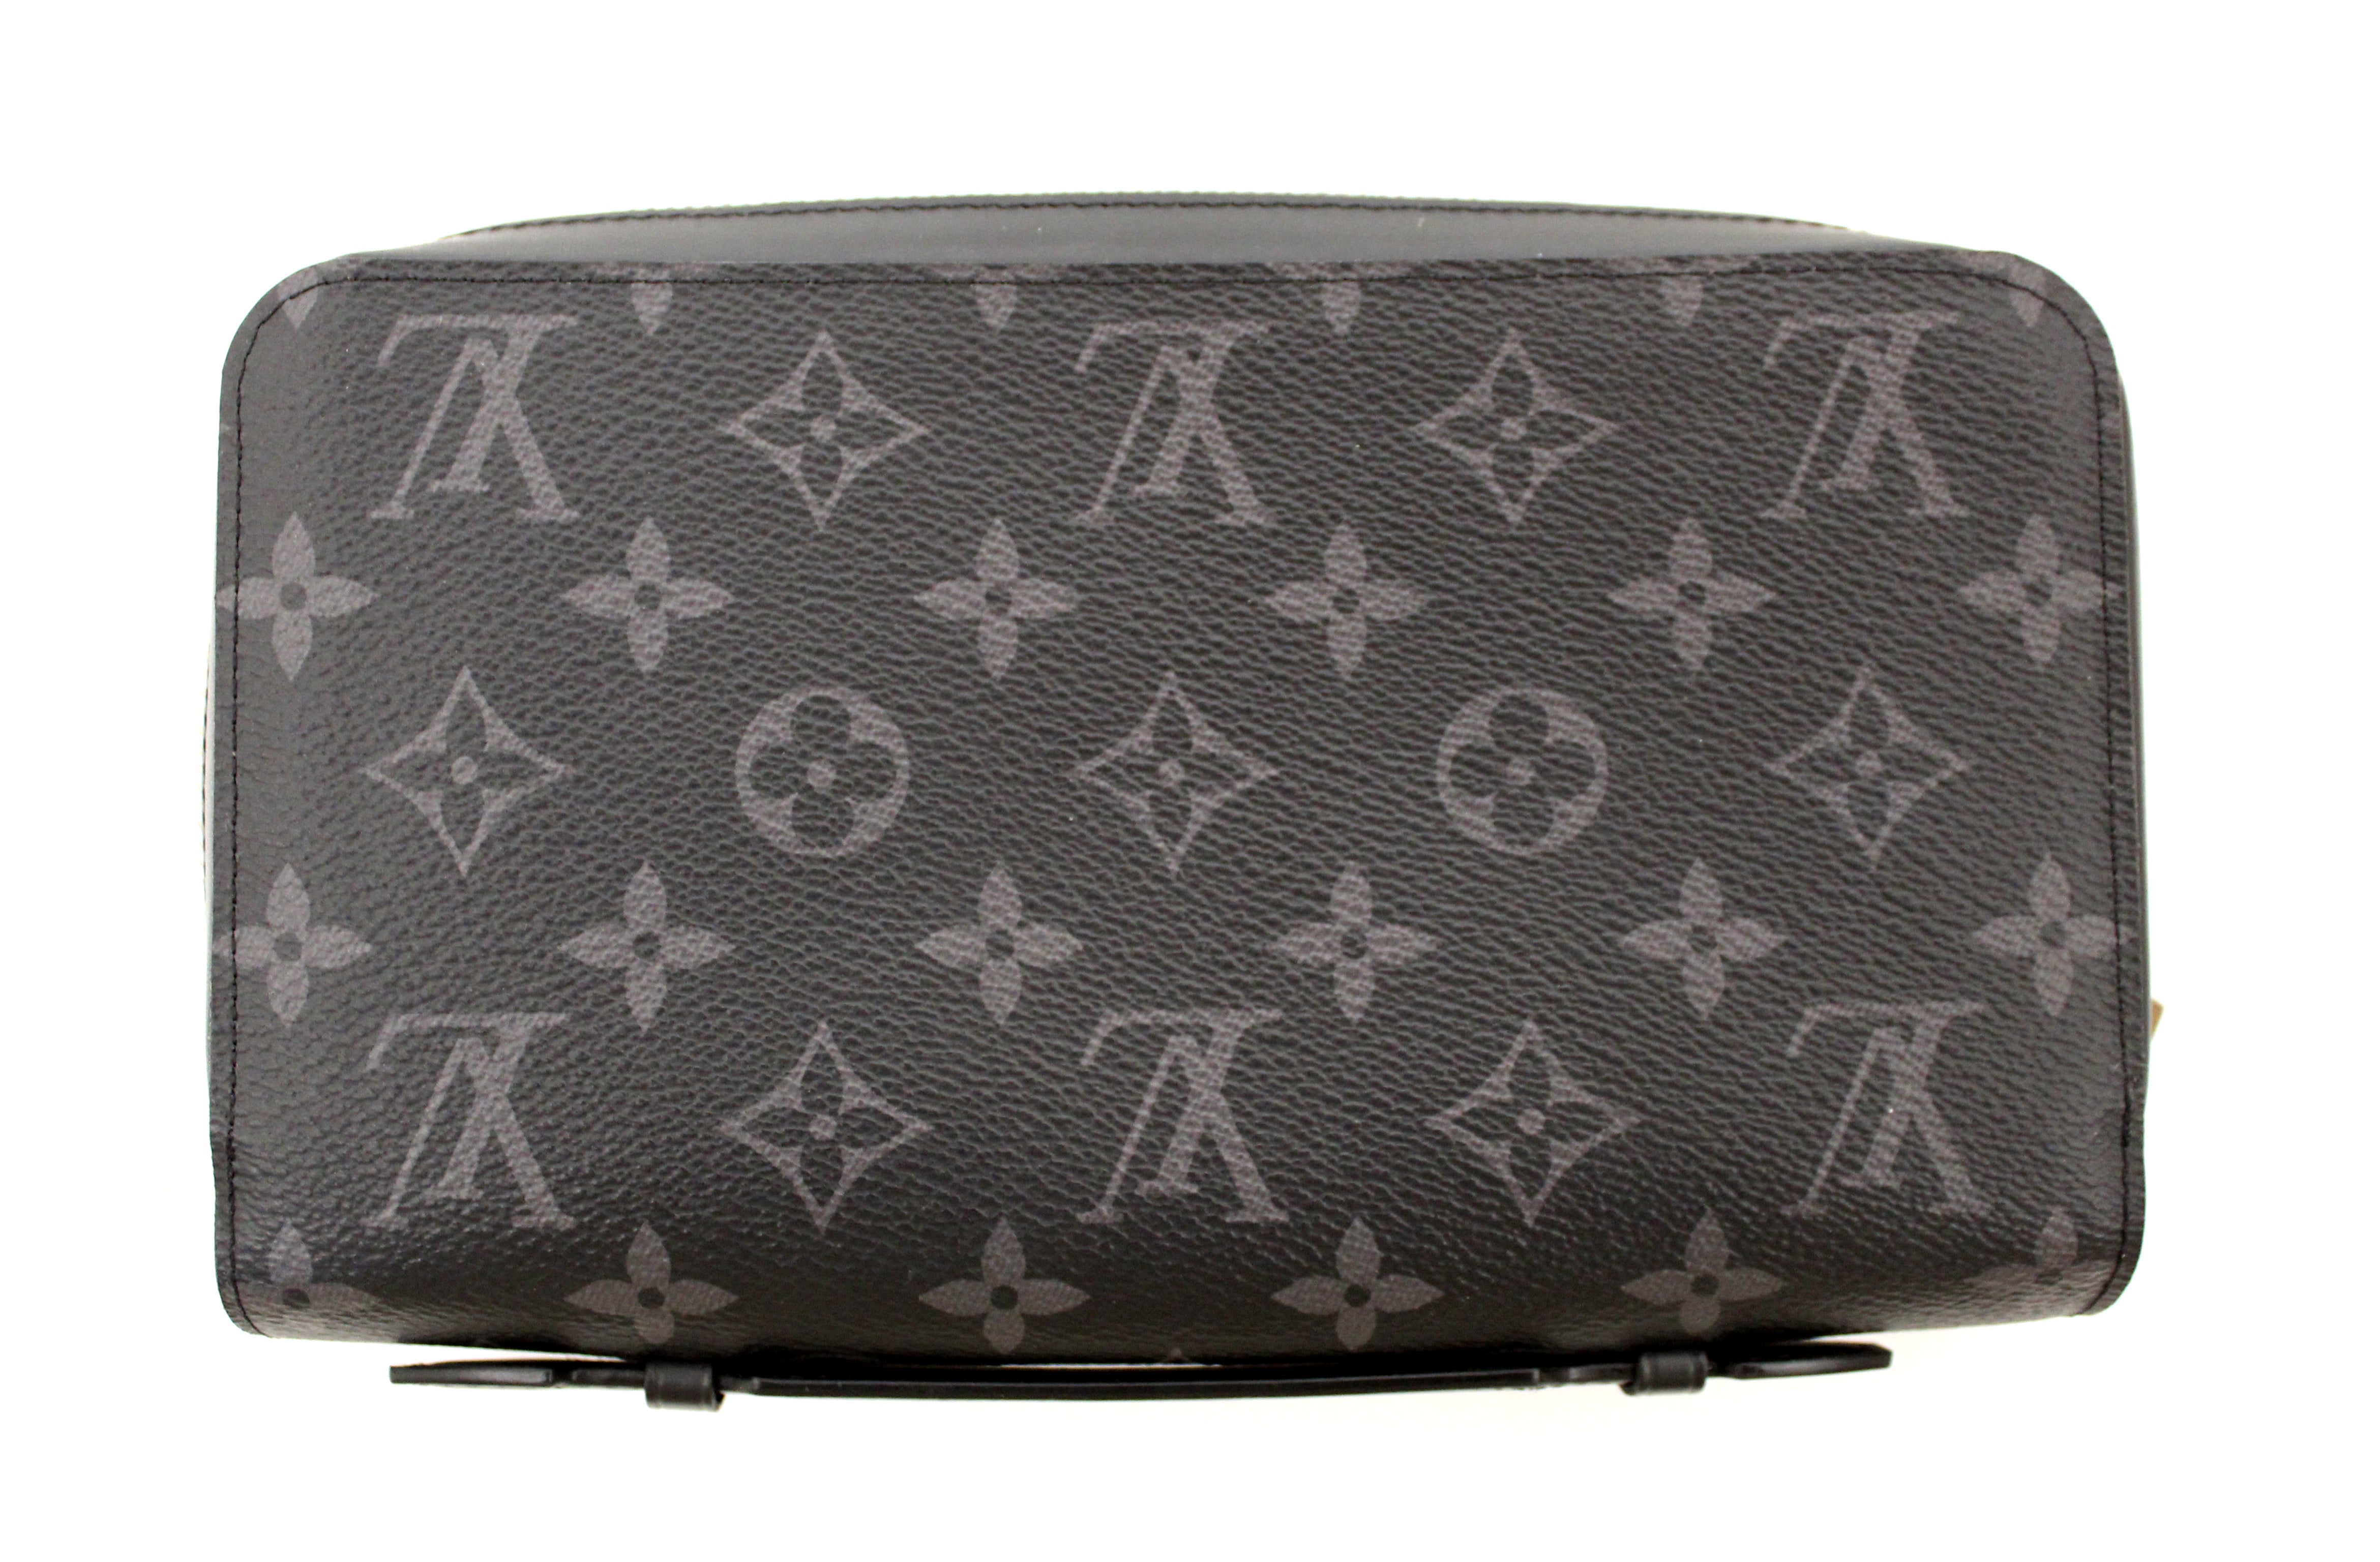 Authentic Louis Vuitton Monogram Eclipse Zippy XL Wallet – Paris